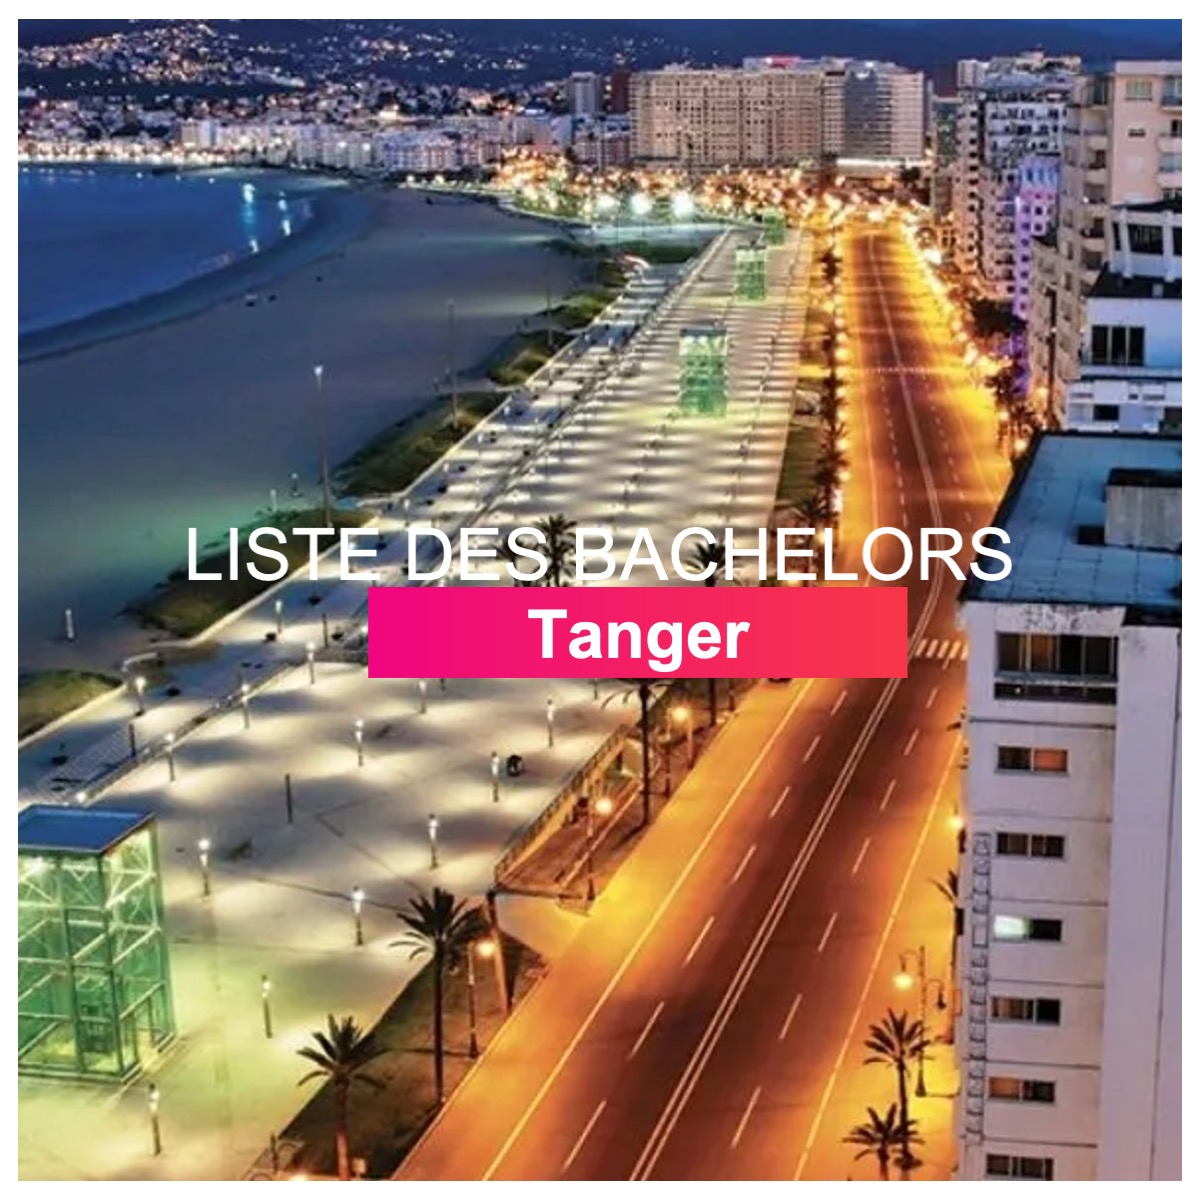 Liste des bachelors Tanger l Dates-concours.ma